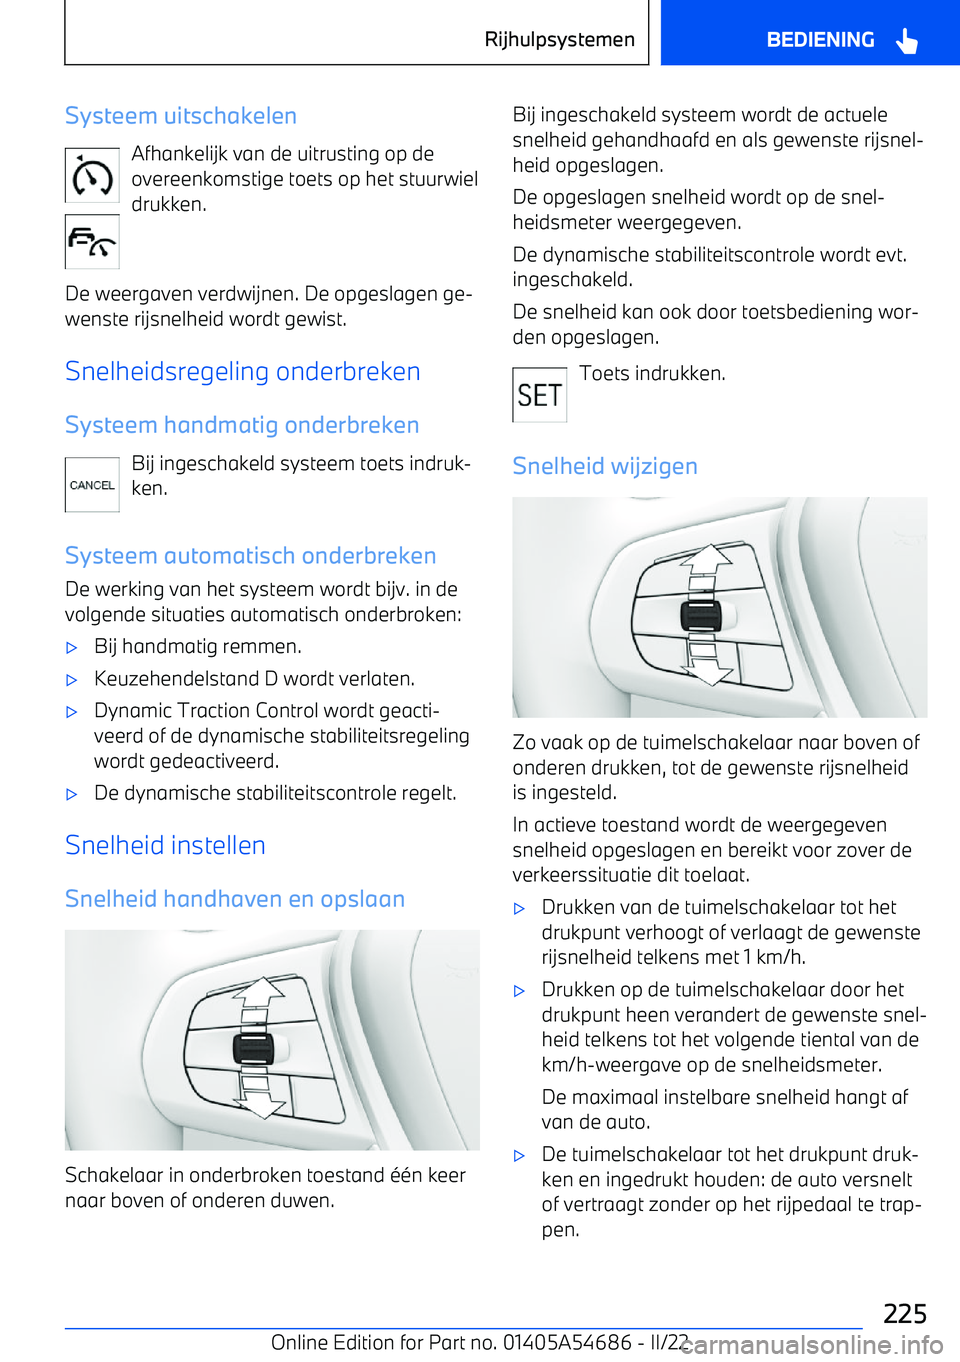 BMW I4 2022  Instructieboekjes (in Dutch) Systeem uitschakelenAfhankelijk van de uitrusting op de
overeenkomstige toets op het stuurwiel drukken.
De weergaven verdwijnen. De opgeslagen ge